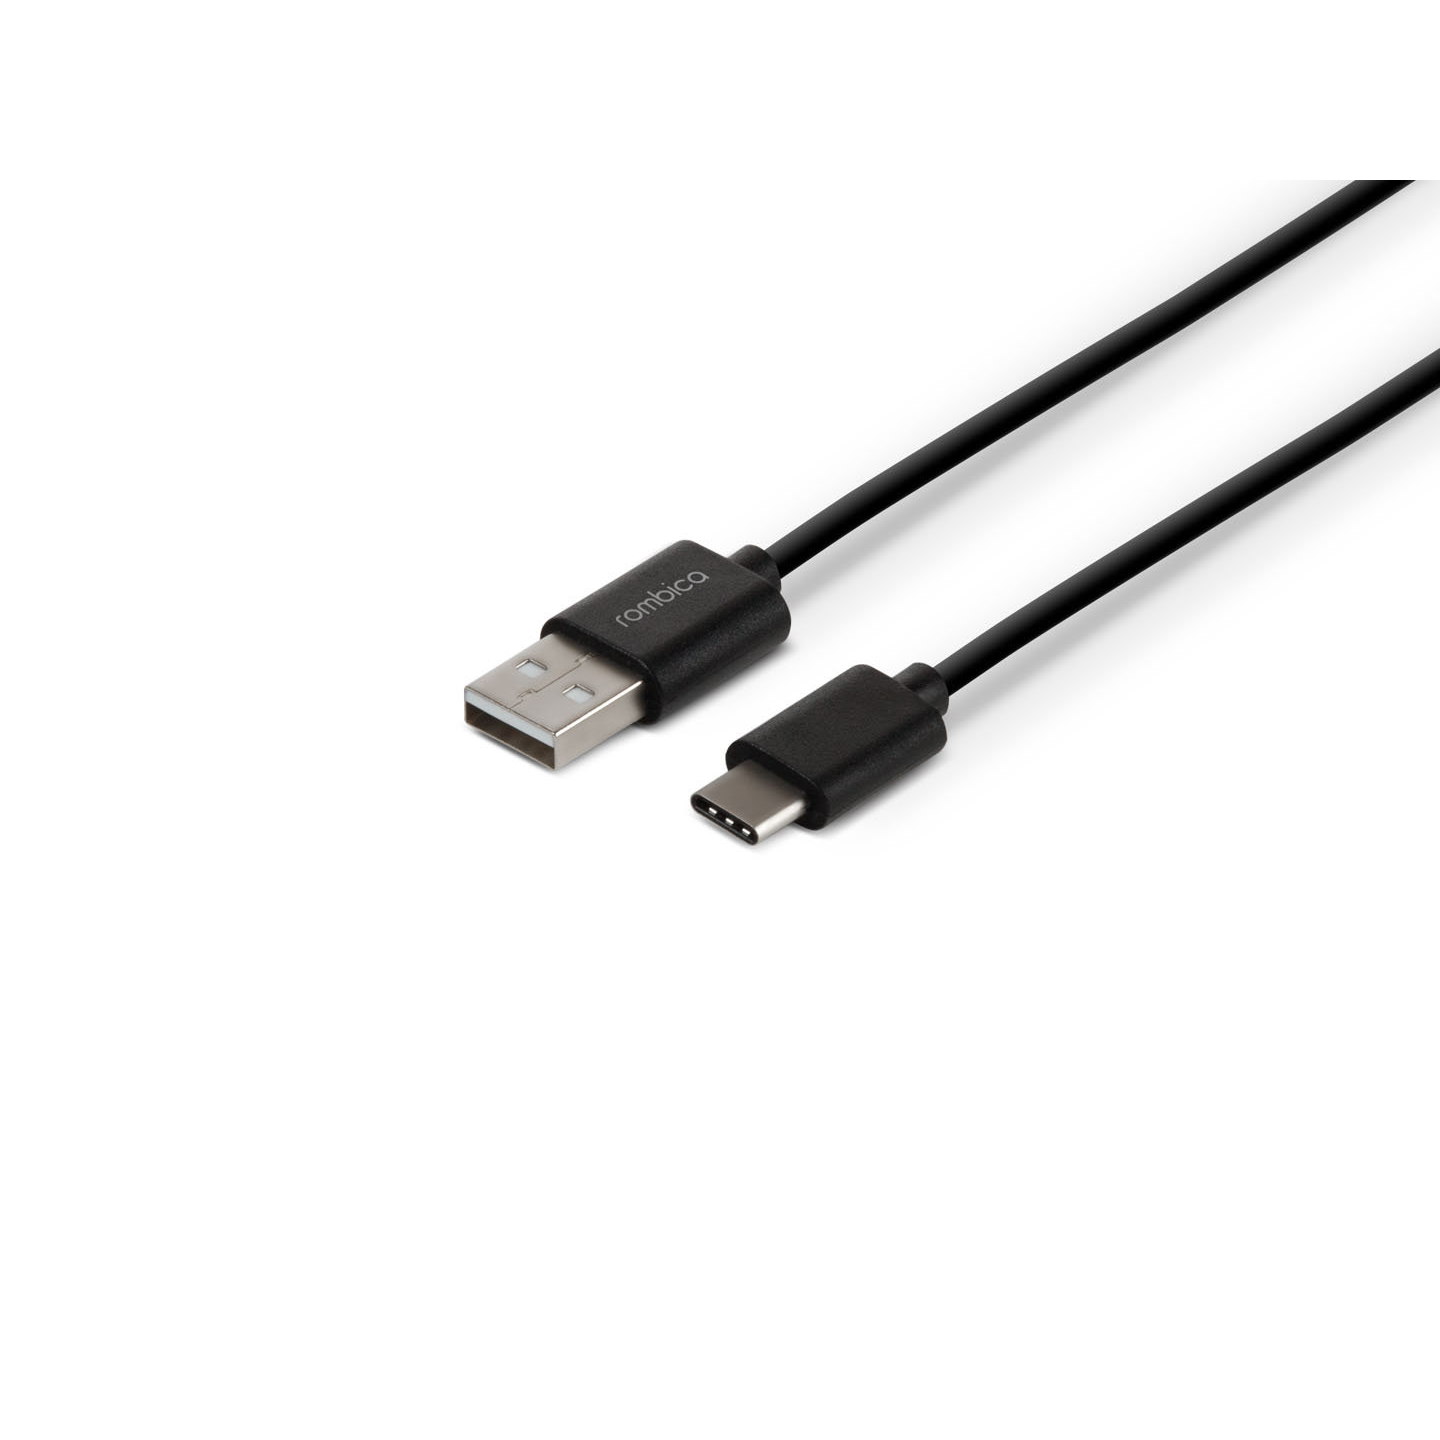 Кабель Rombica Digital CR-01, USB - USB Type-C, пластик, 1м, черный кабель rombica digital mr 01 blue 1